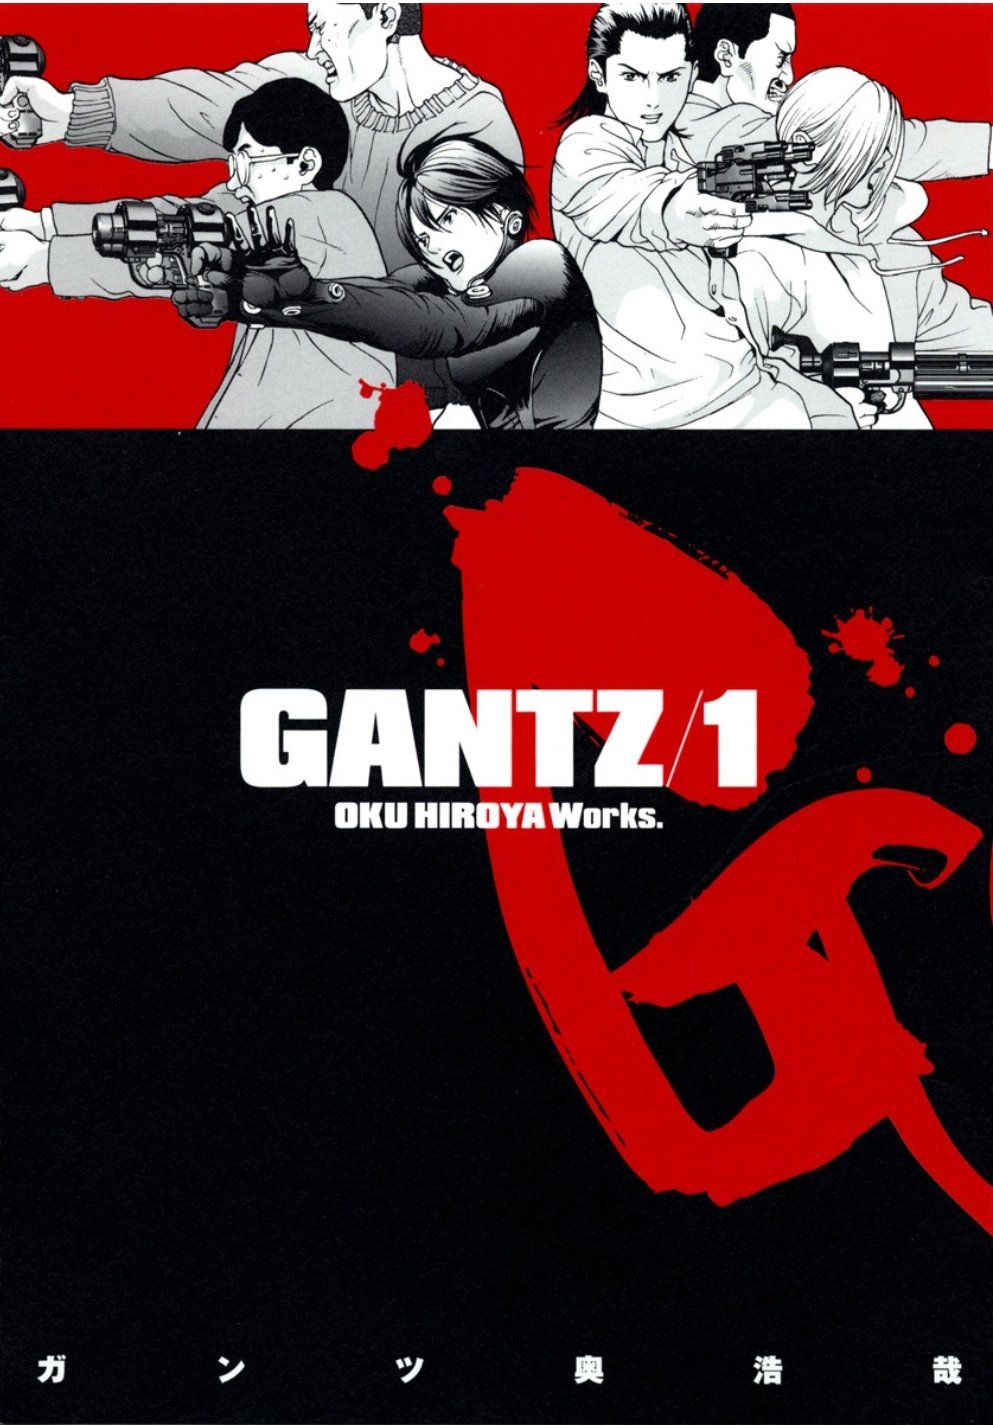 Gantz - Filme live-action baseado no mangá ganha diretor